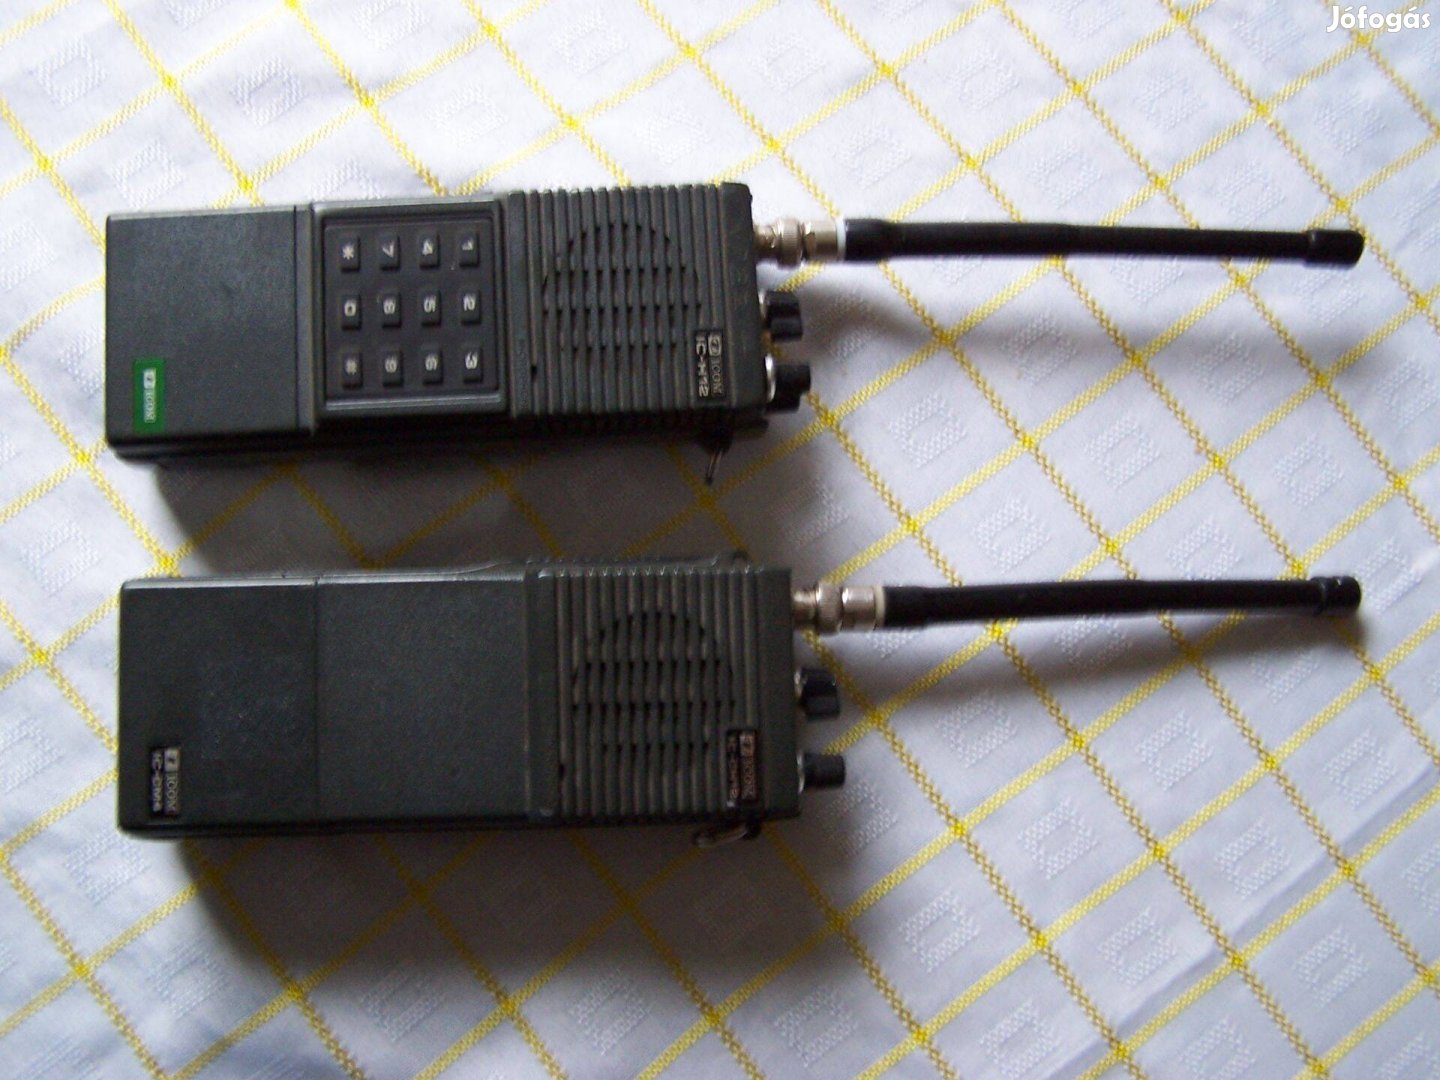 Rádiótelefon ICOM IC-H12 URH üzemlépes 2 darab URH rádió retró termék